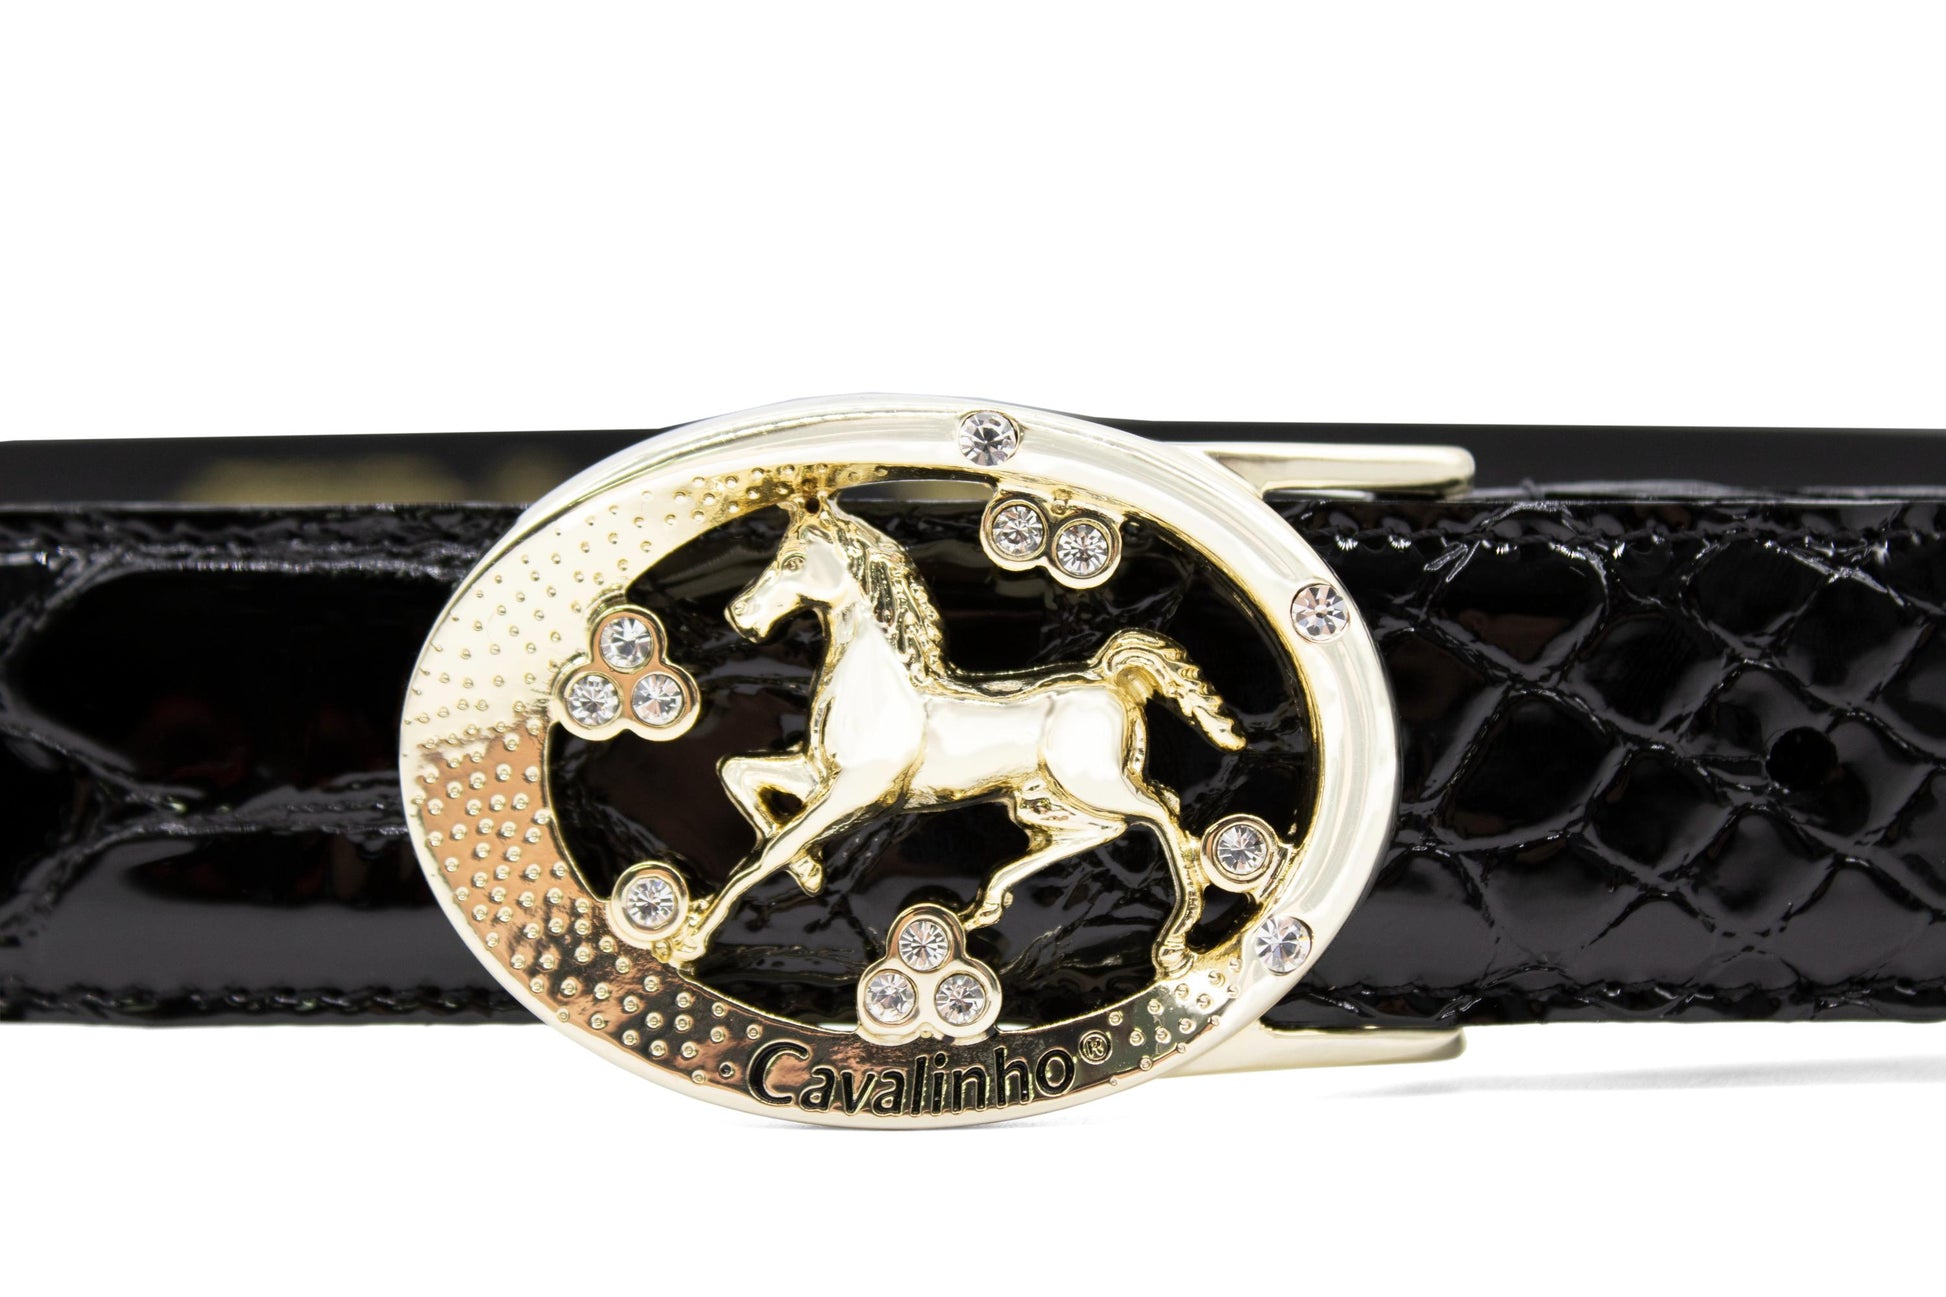 #color_ Black Gold | Cavalinho Oval Horse Leather Belt - Black Gold - 58010817.01_3